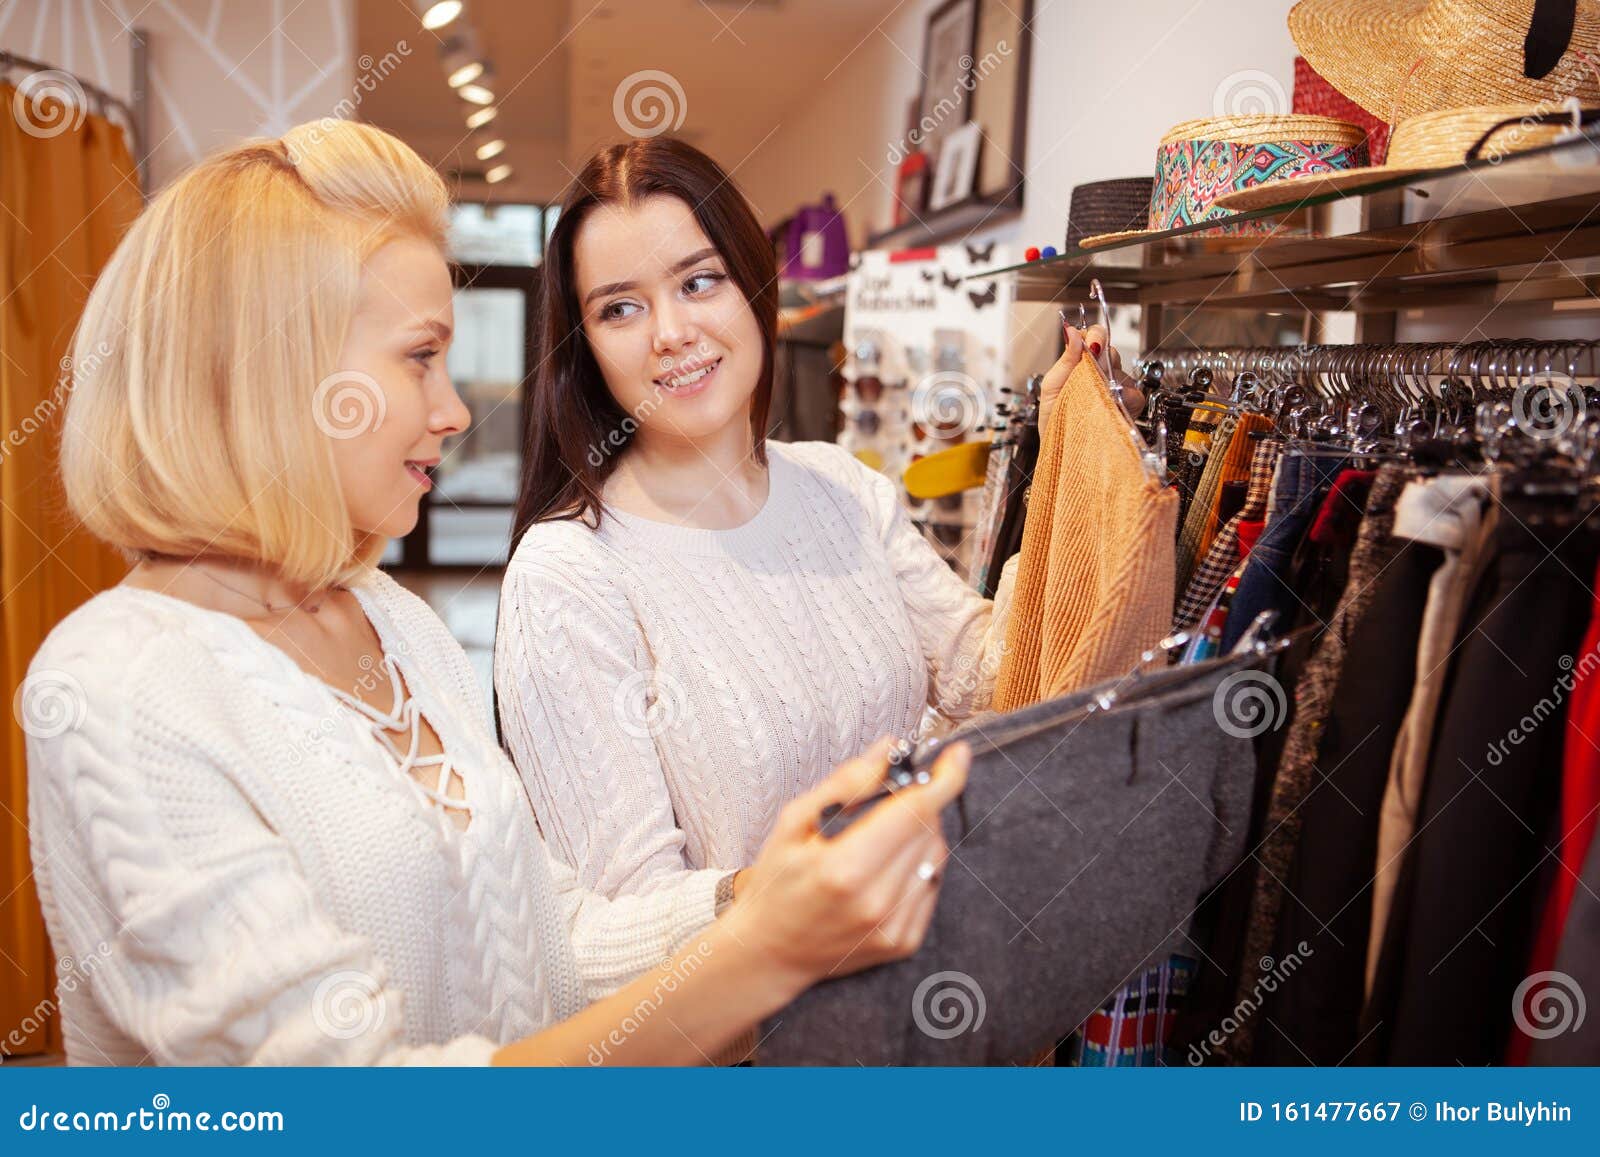 Amigas Comprando Juntas En Una Tienda De Ropa Imagen de archivo - Imagen de  ropas, clientes: 161477667